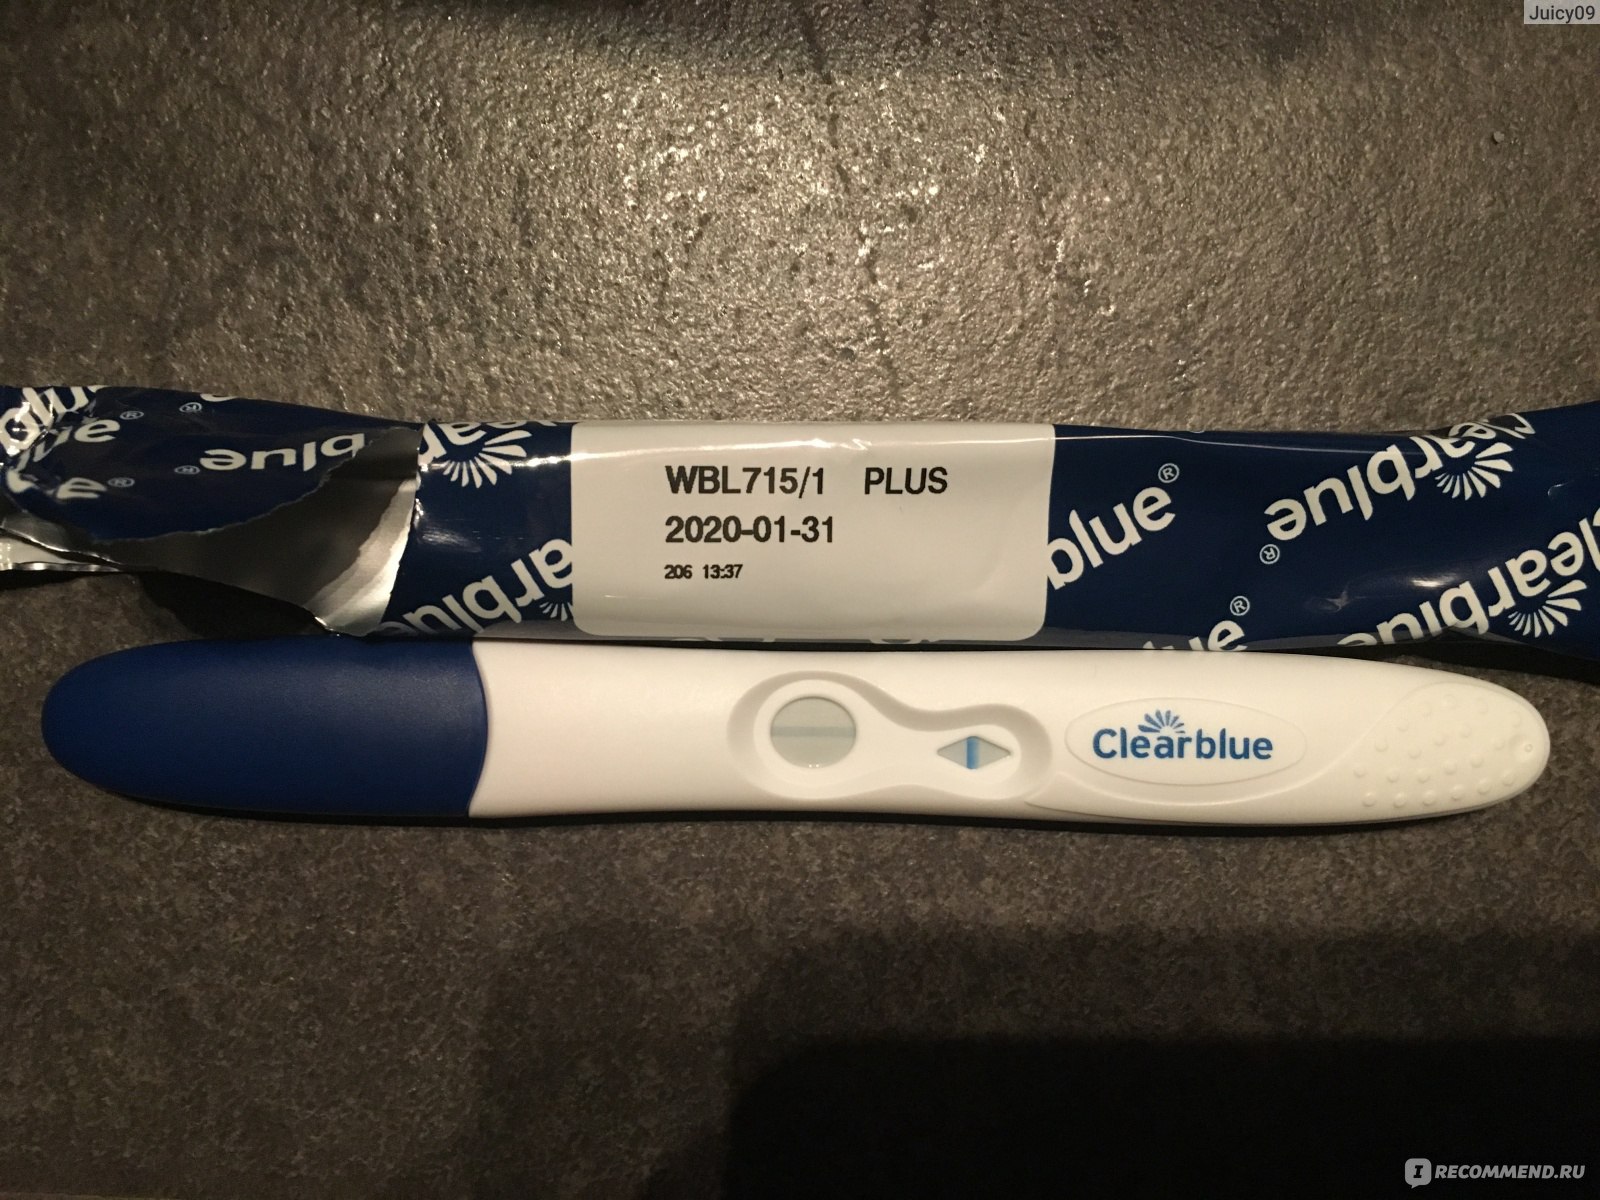 Тест на беременность Clearblue плюс минус